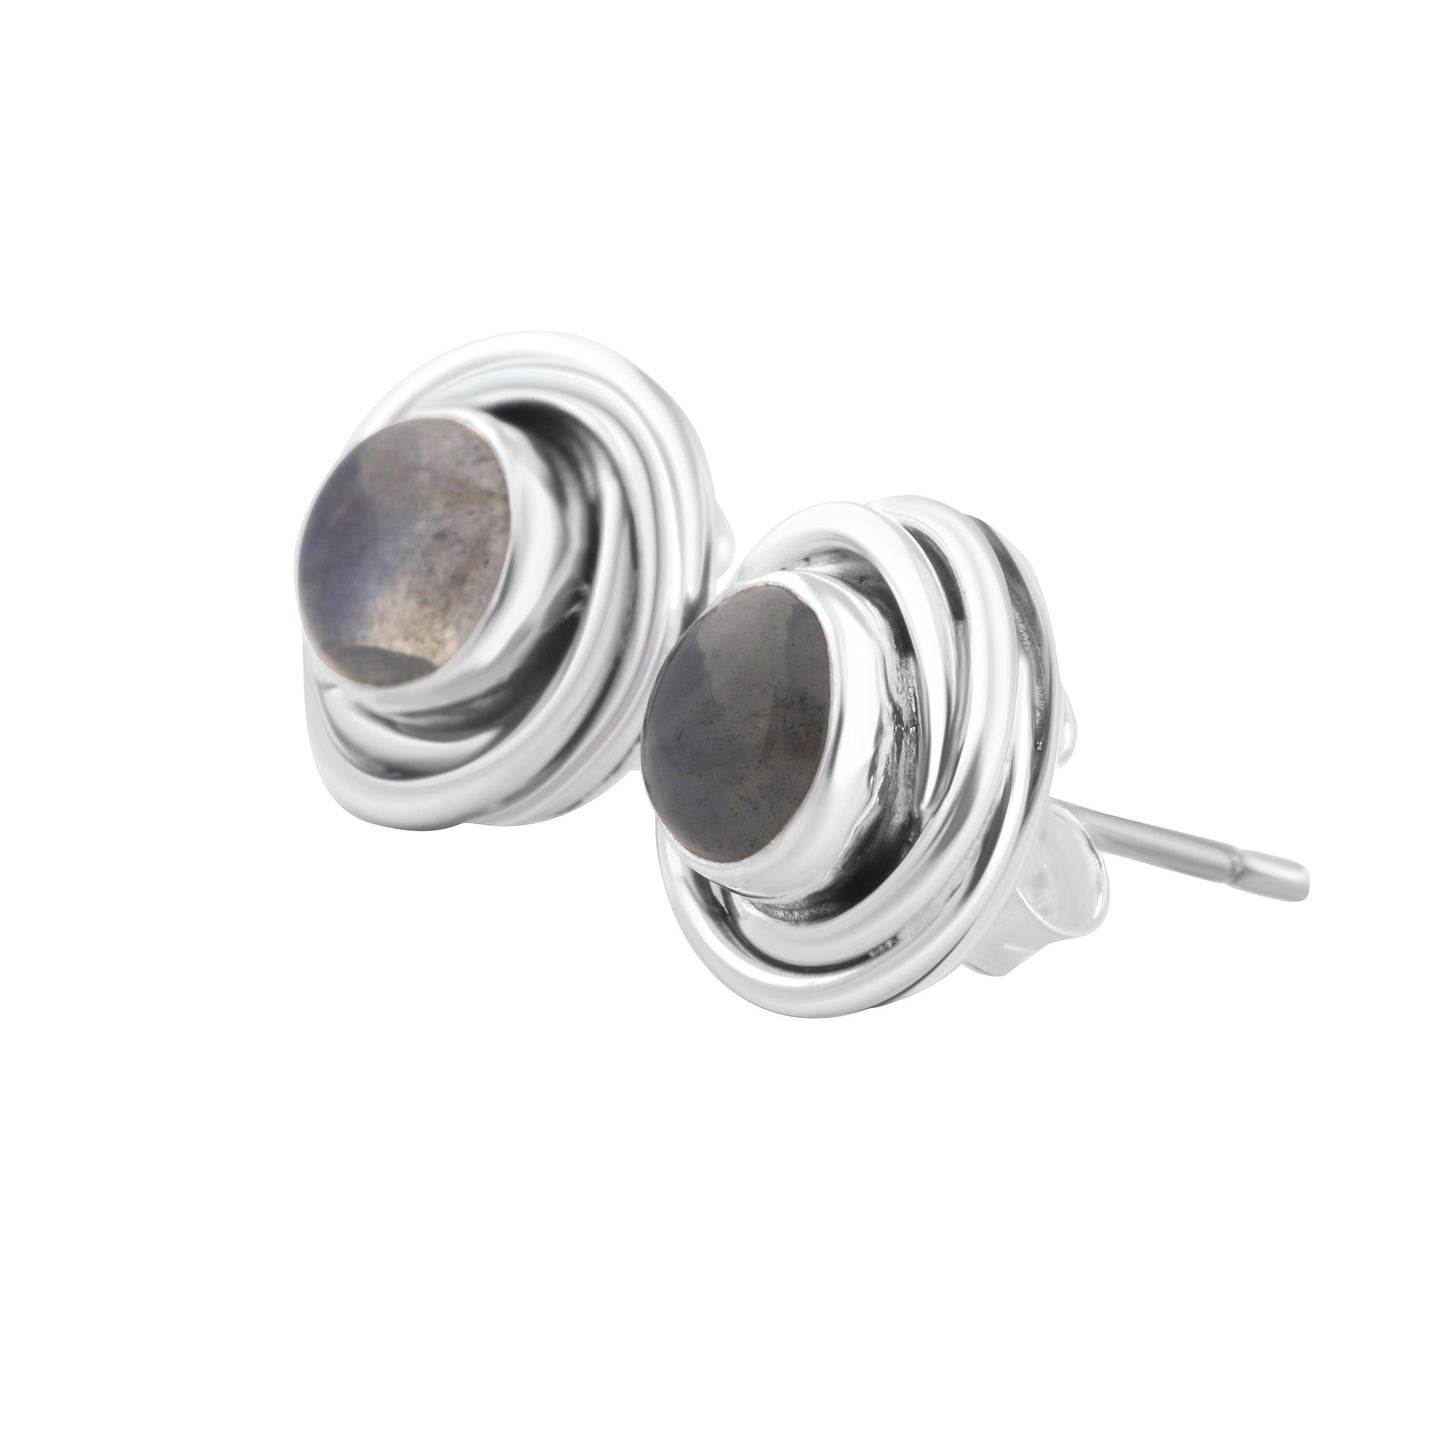 Genuine LABRADORITE Gems SOLID 925 Oxidized SILVER twirl Stud Earrings, Round Shaped Cut Labradorite Sterling Silver Earrings, Australia, Zorbajewellers